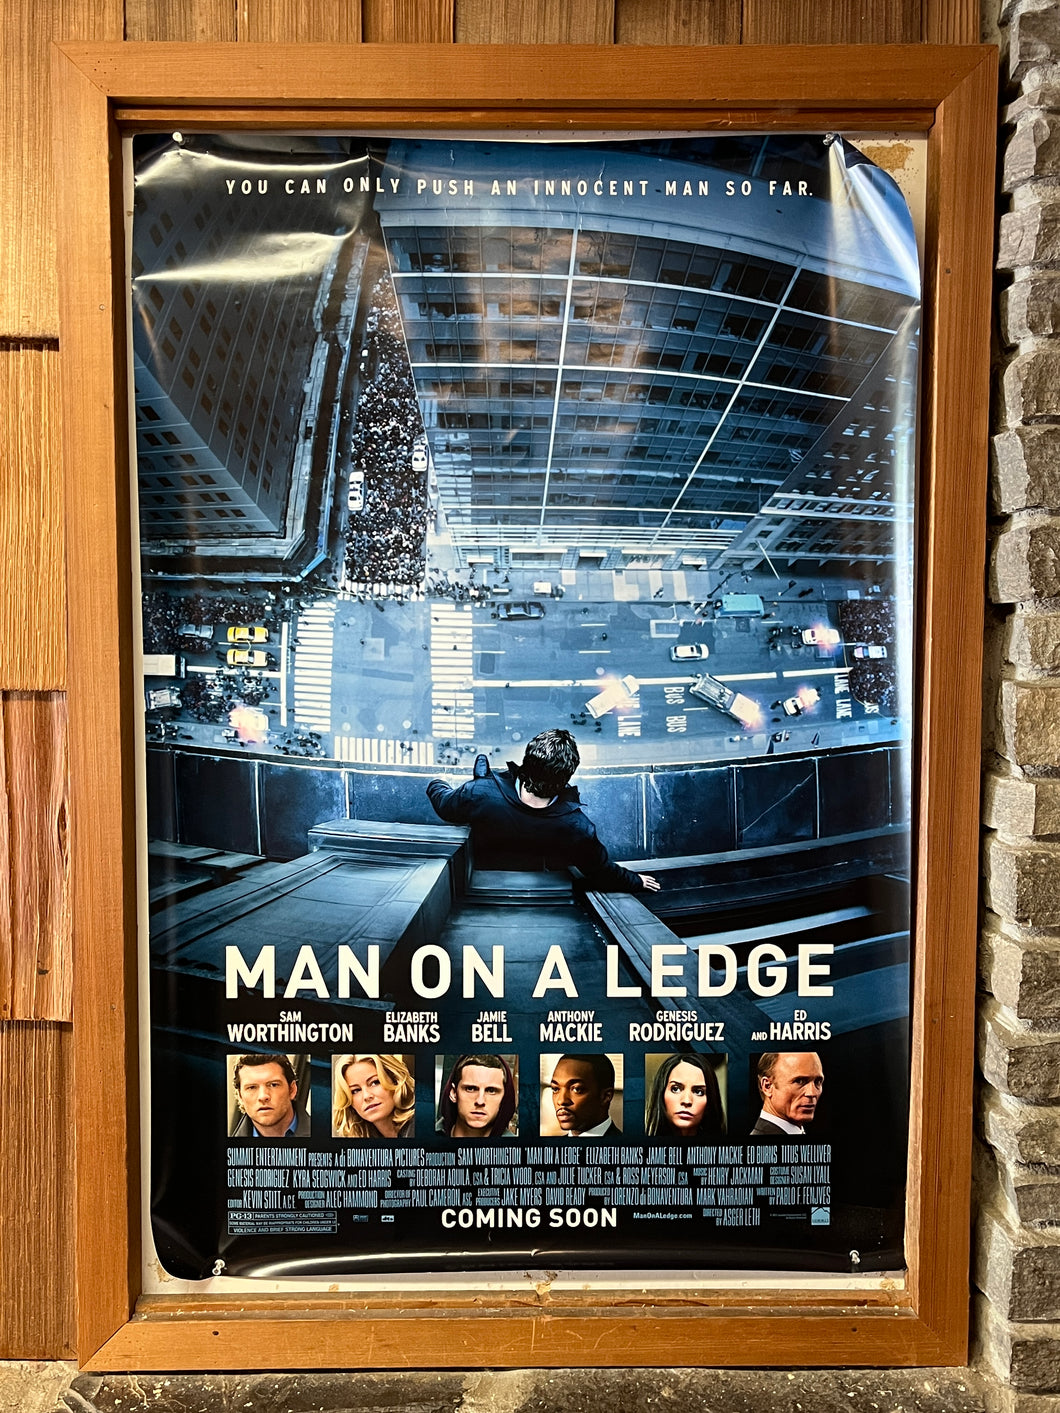 Man on a Ledge (2012)